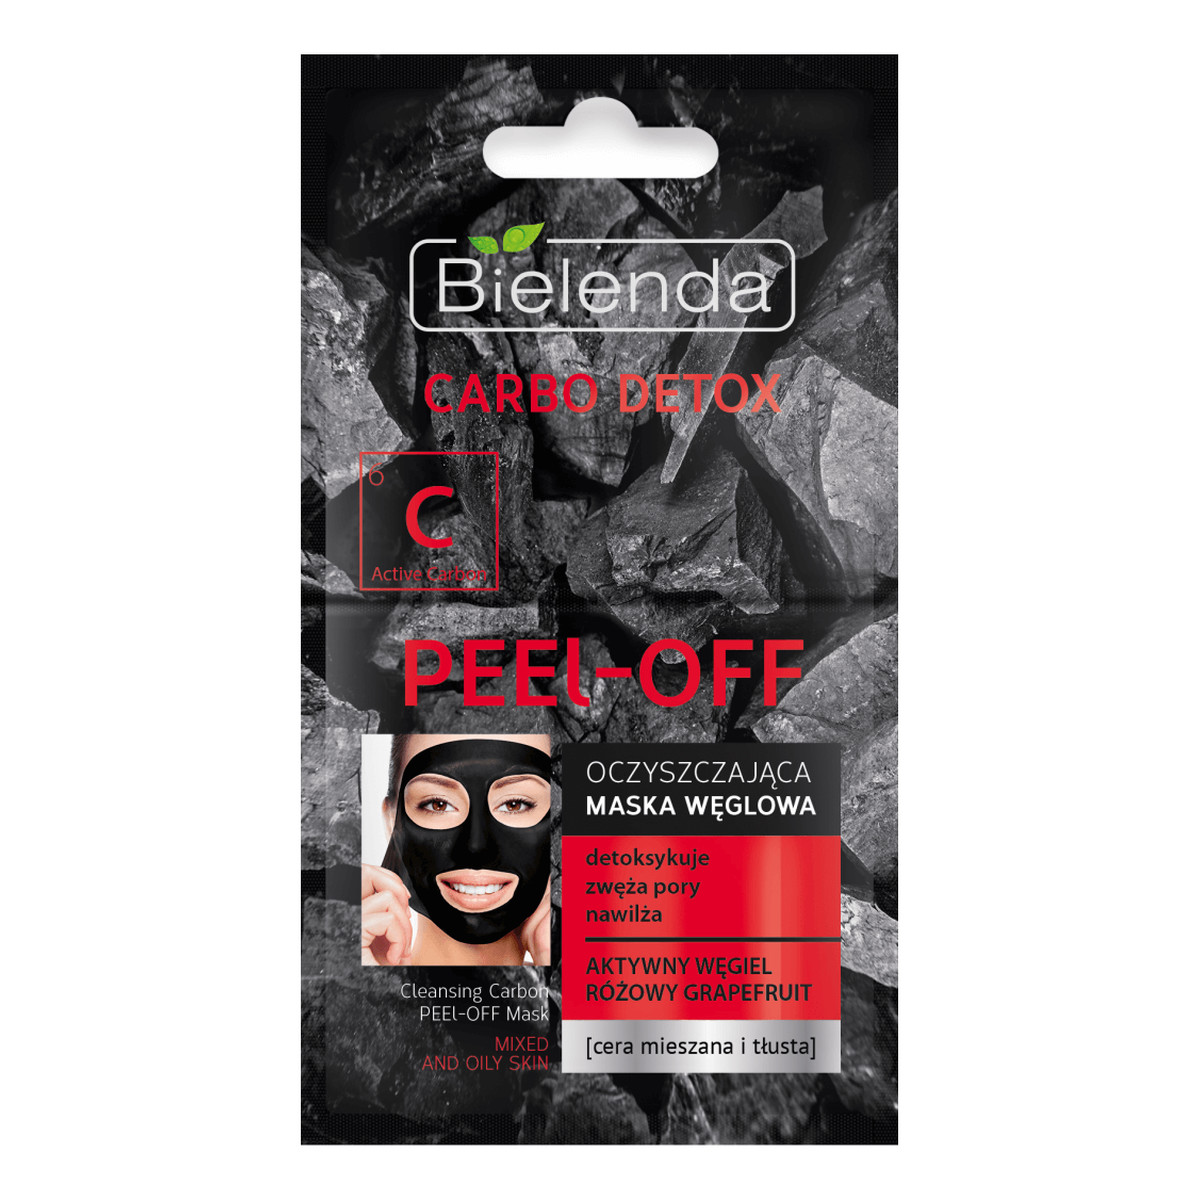 Bielenda Carbo Detox maska węglowa oczyszczająca peel-off 2x6g 12g